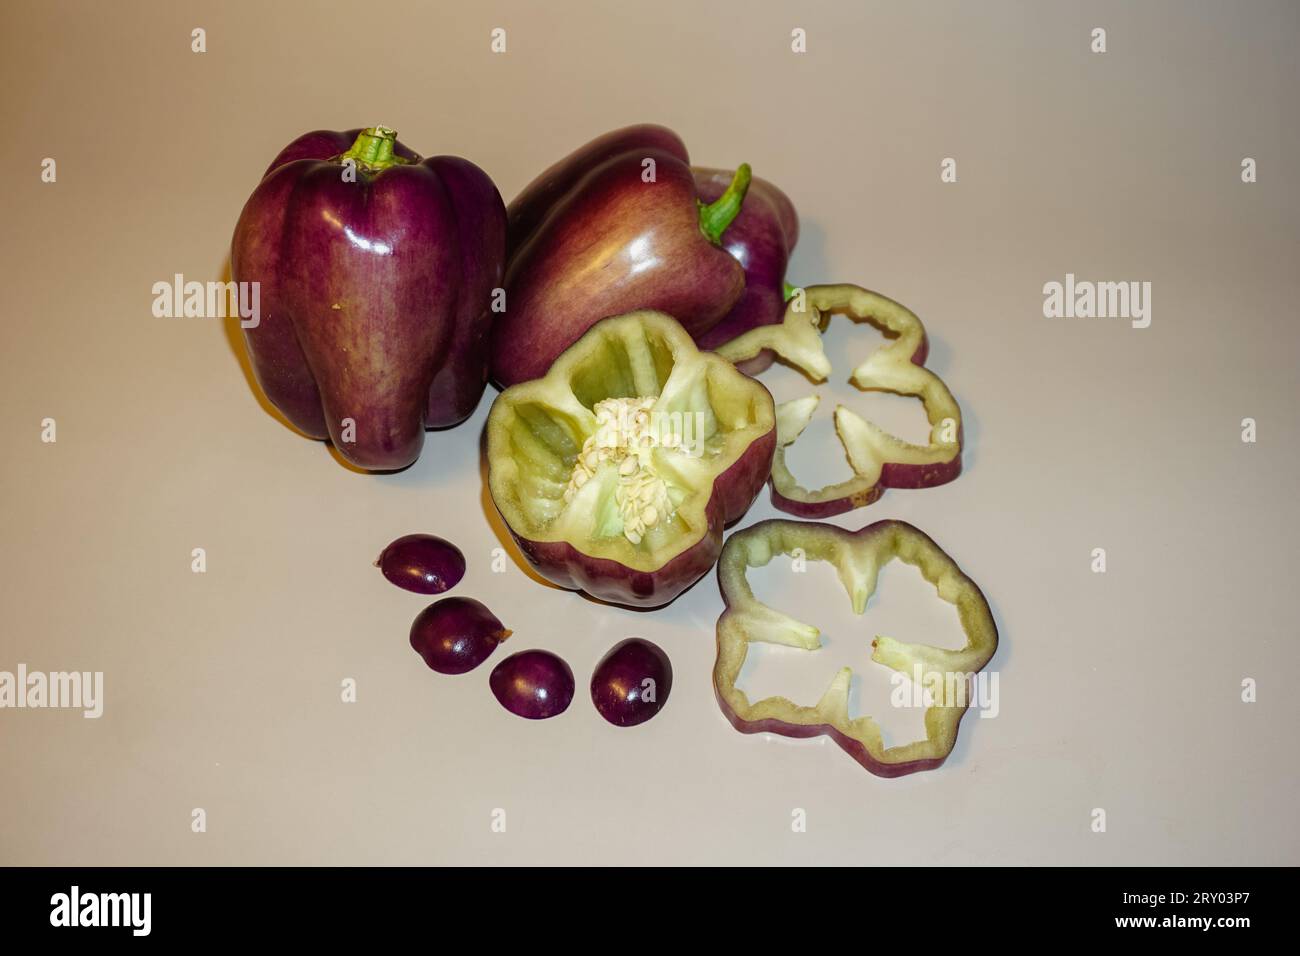 Tauchen Sie ein in eine Welt der kulinarischen Kunst durch Raju C Reddys Objektiv mit dem fesselnden Stillleben Foto von geschnittenen Purple Bell Peppers. Stockfoto